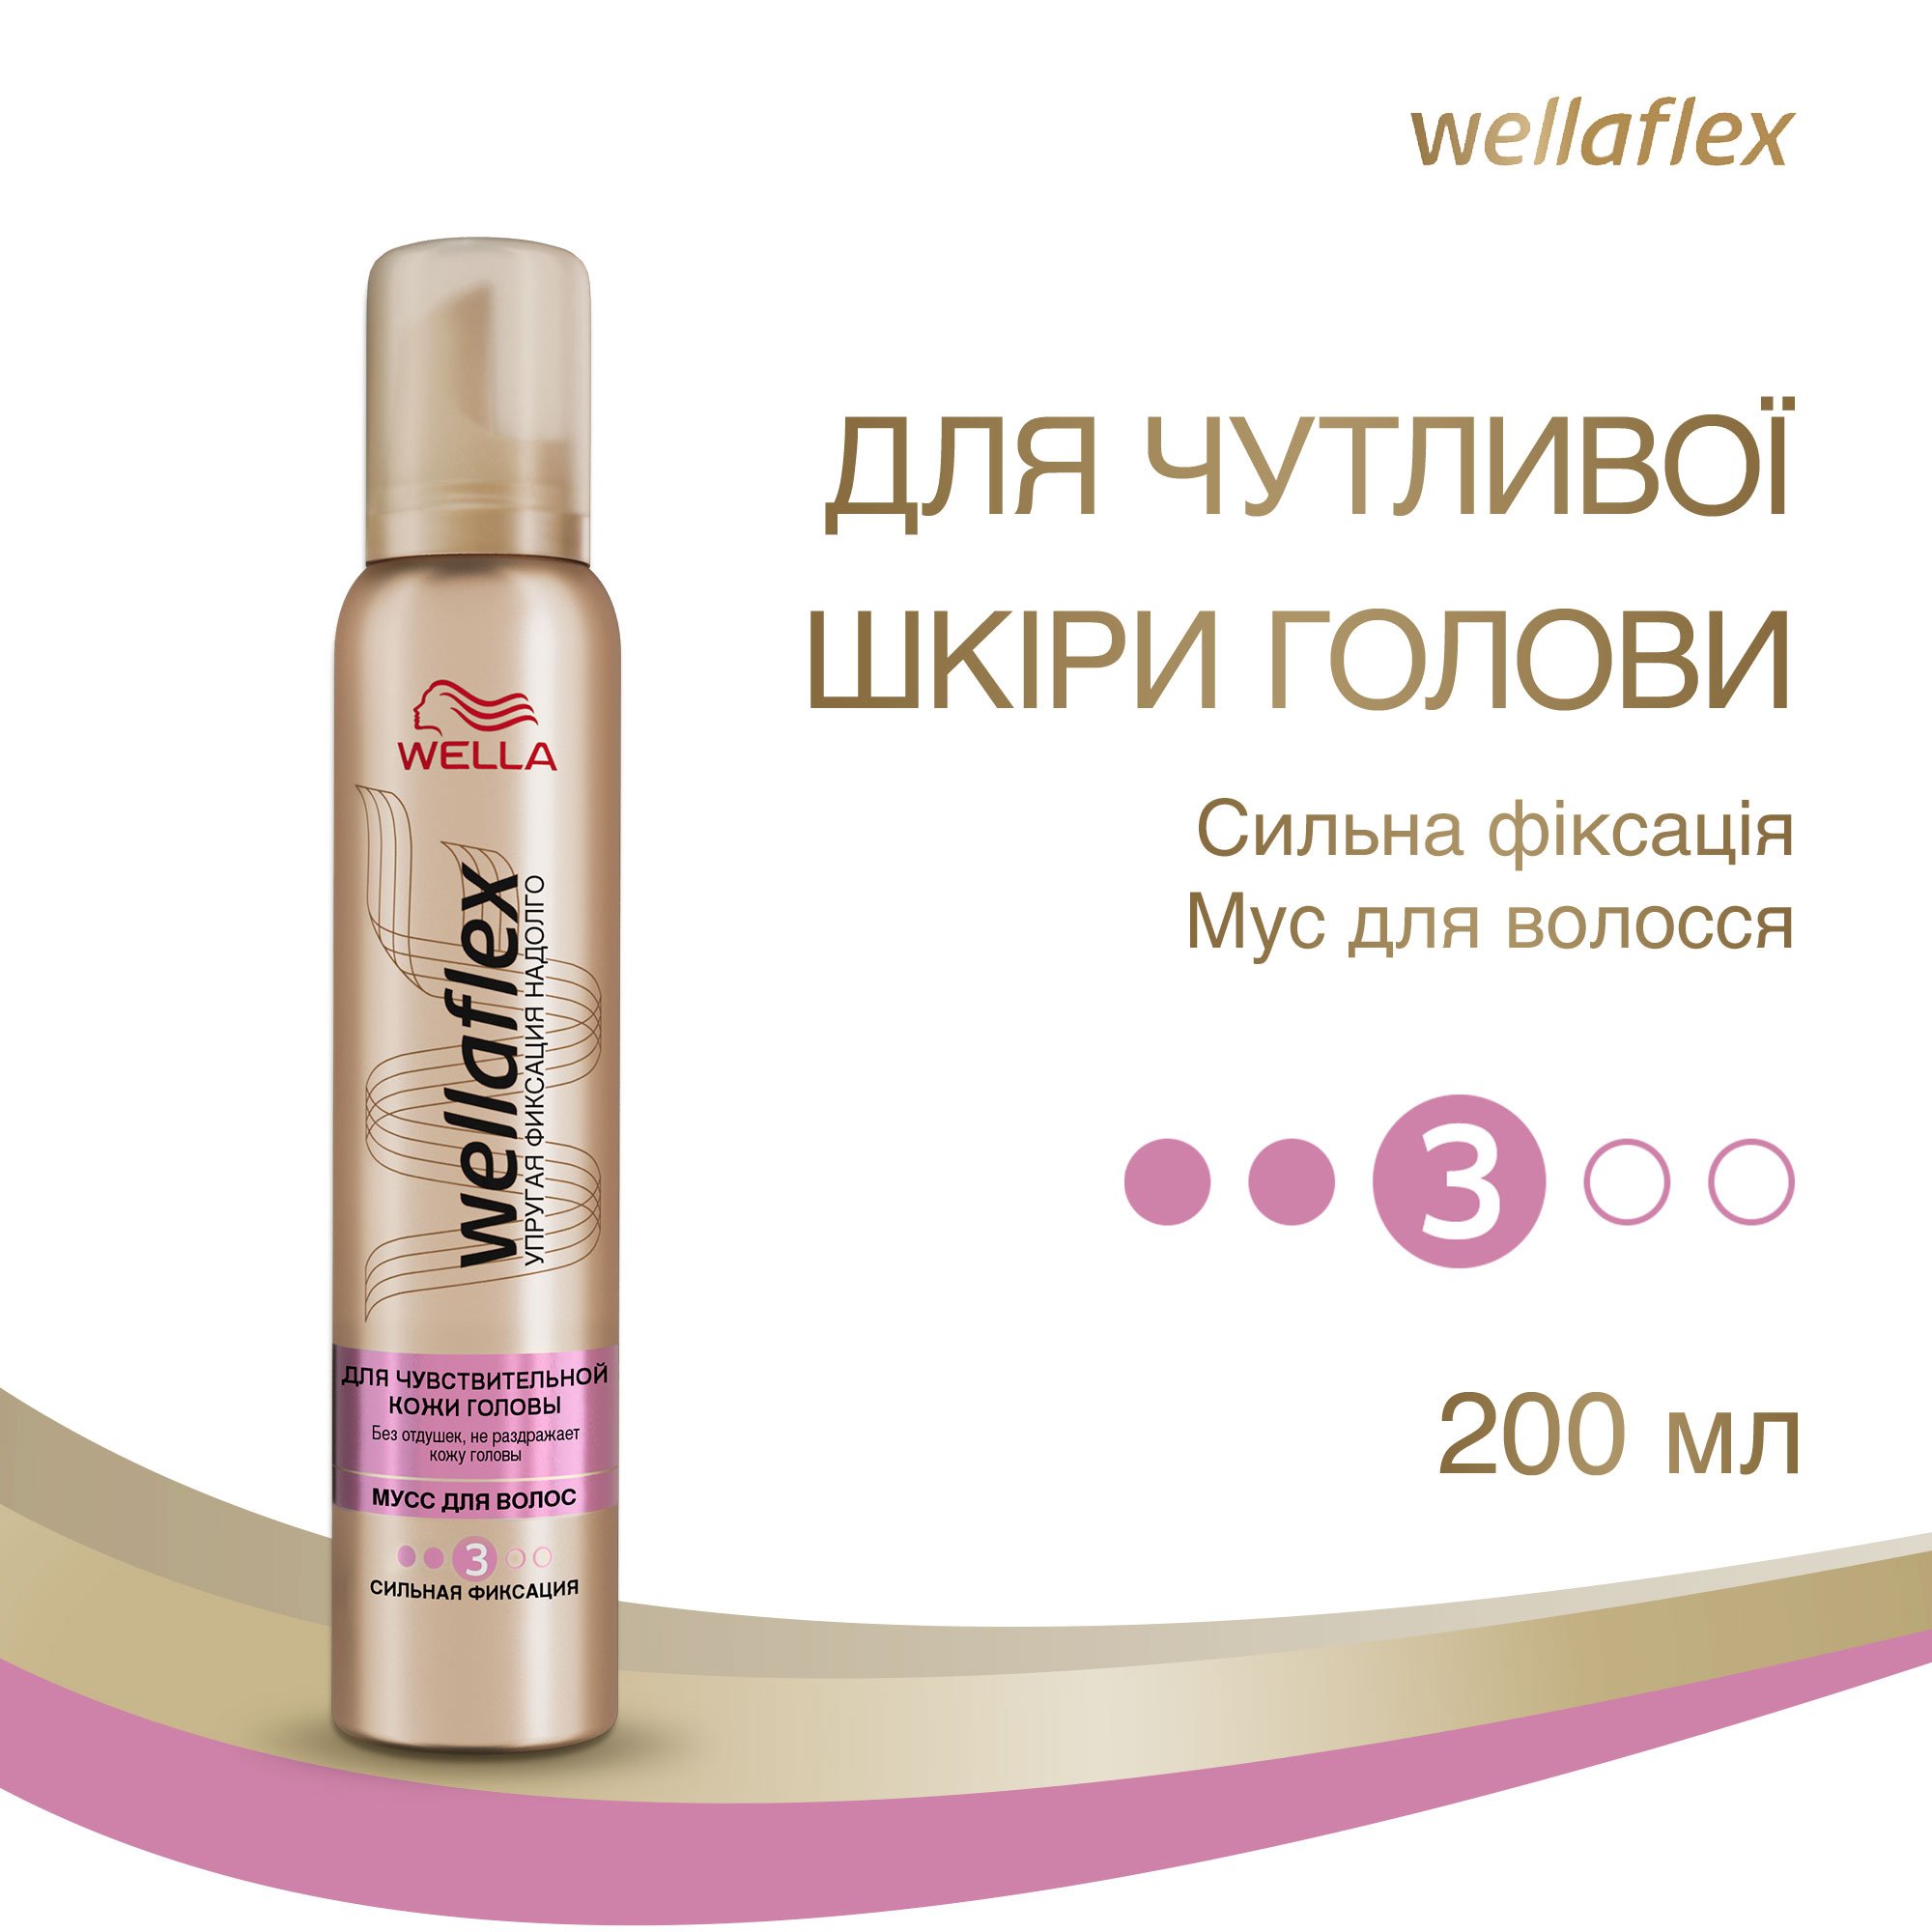 Мус для волосся Wellaflex для чутливої шкіри голови Сильної фіксації, 200 мл - фото 2